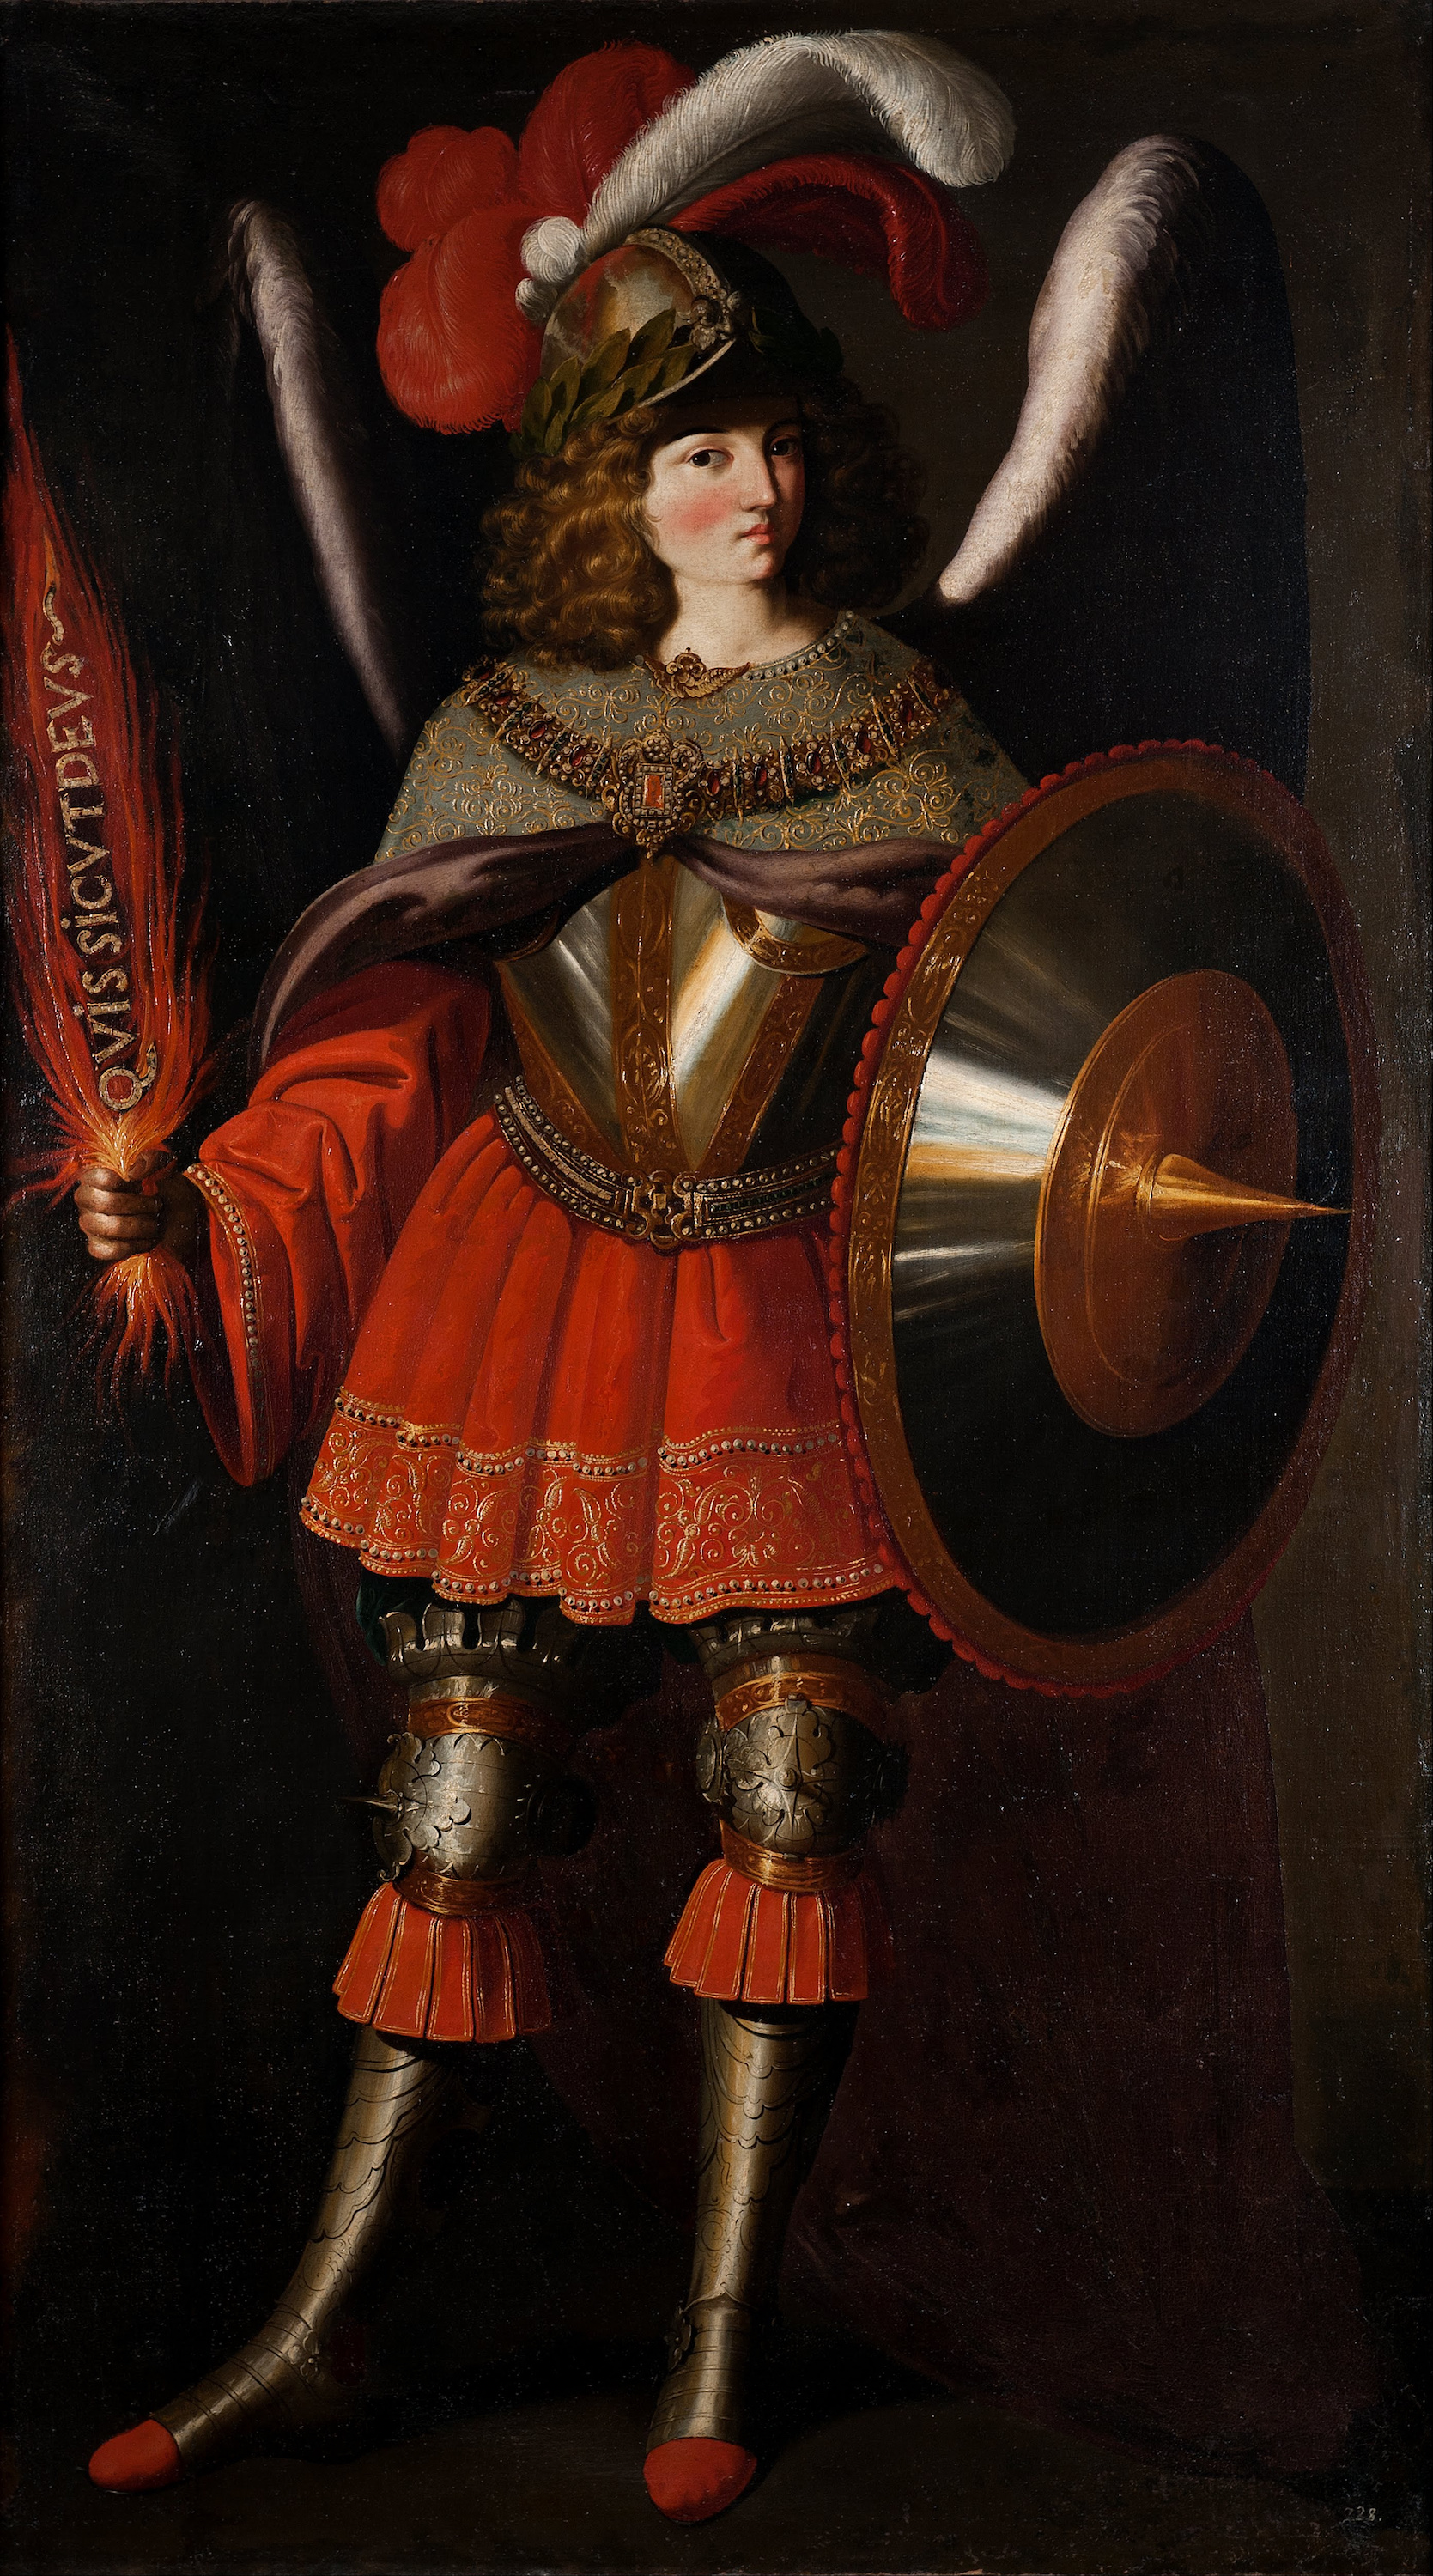 The Archangel Michael by Francisco de Zurbarán - 1598 - 1664 - 126 x 224 cm Fundación Banco Santander